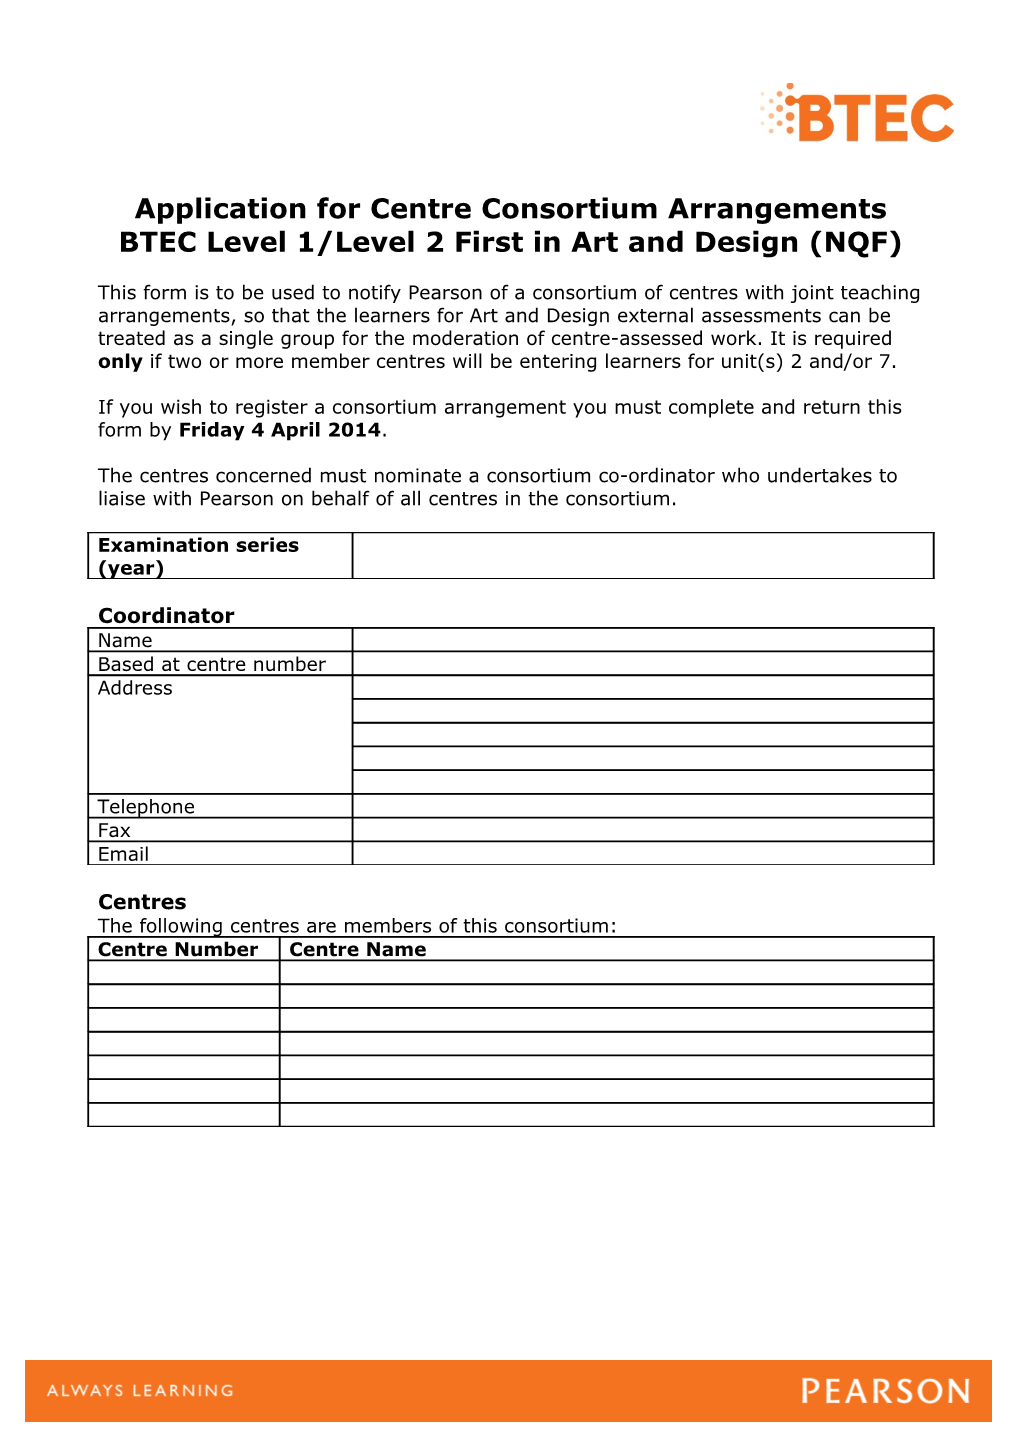 Art & Design External Assessment Consortium Arrangements Form